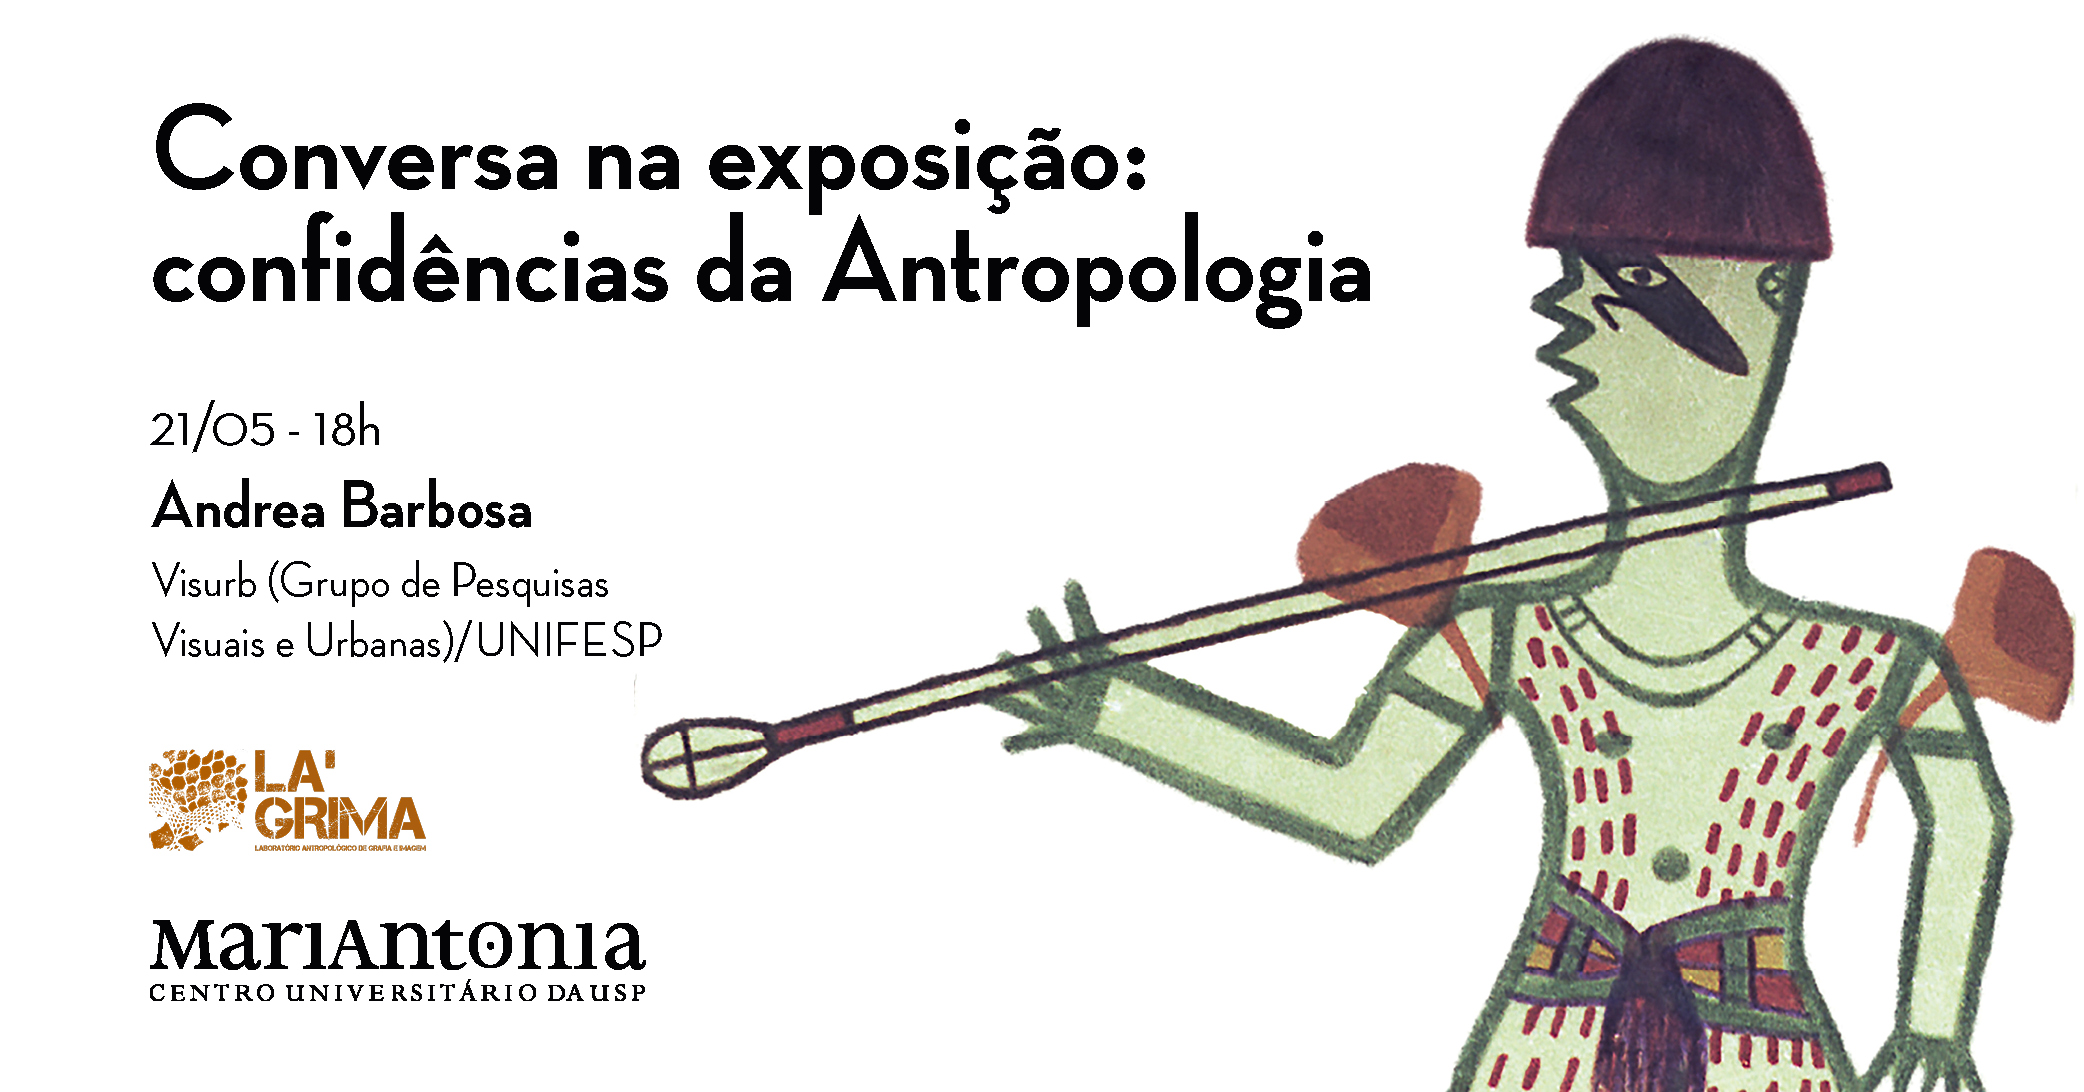 Conversa na exposição recebe a antropóloga Andrea Barbosa